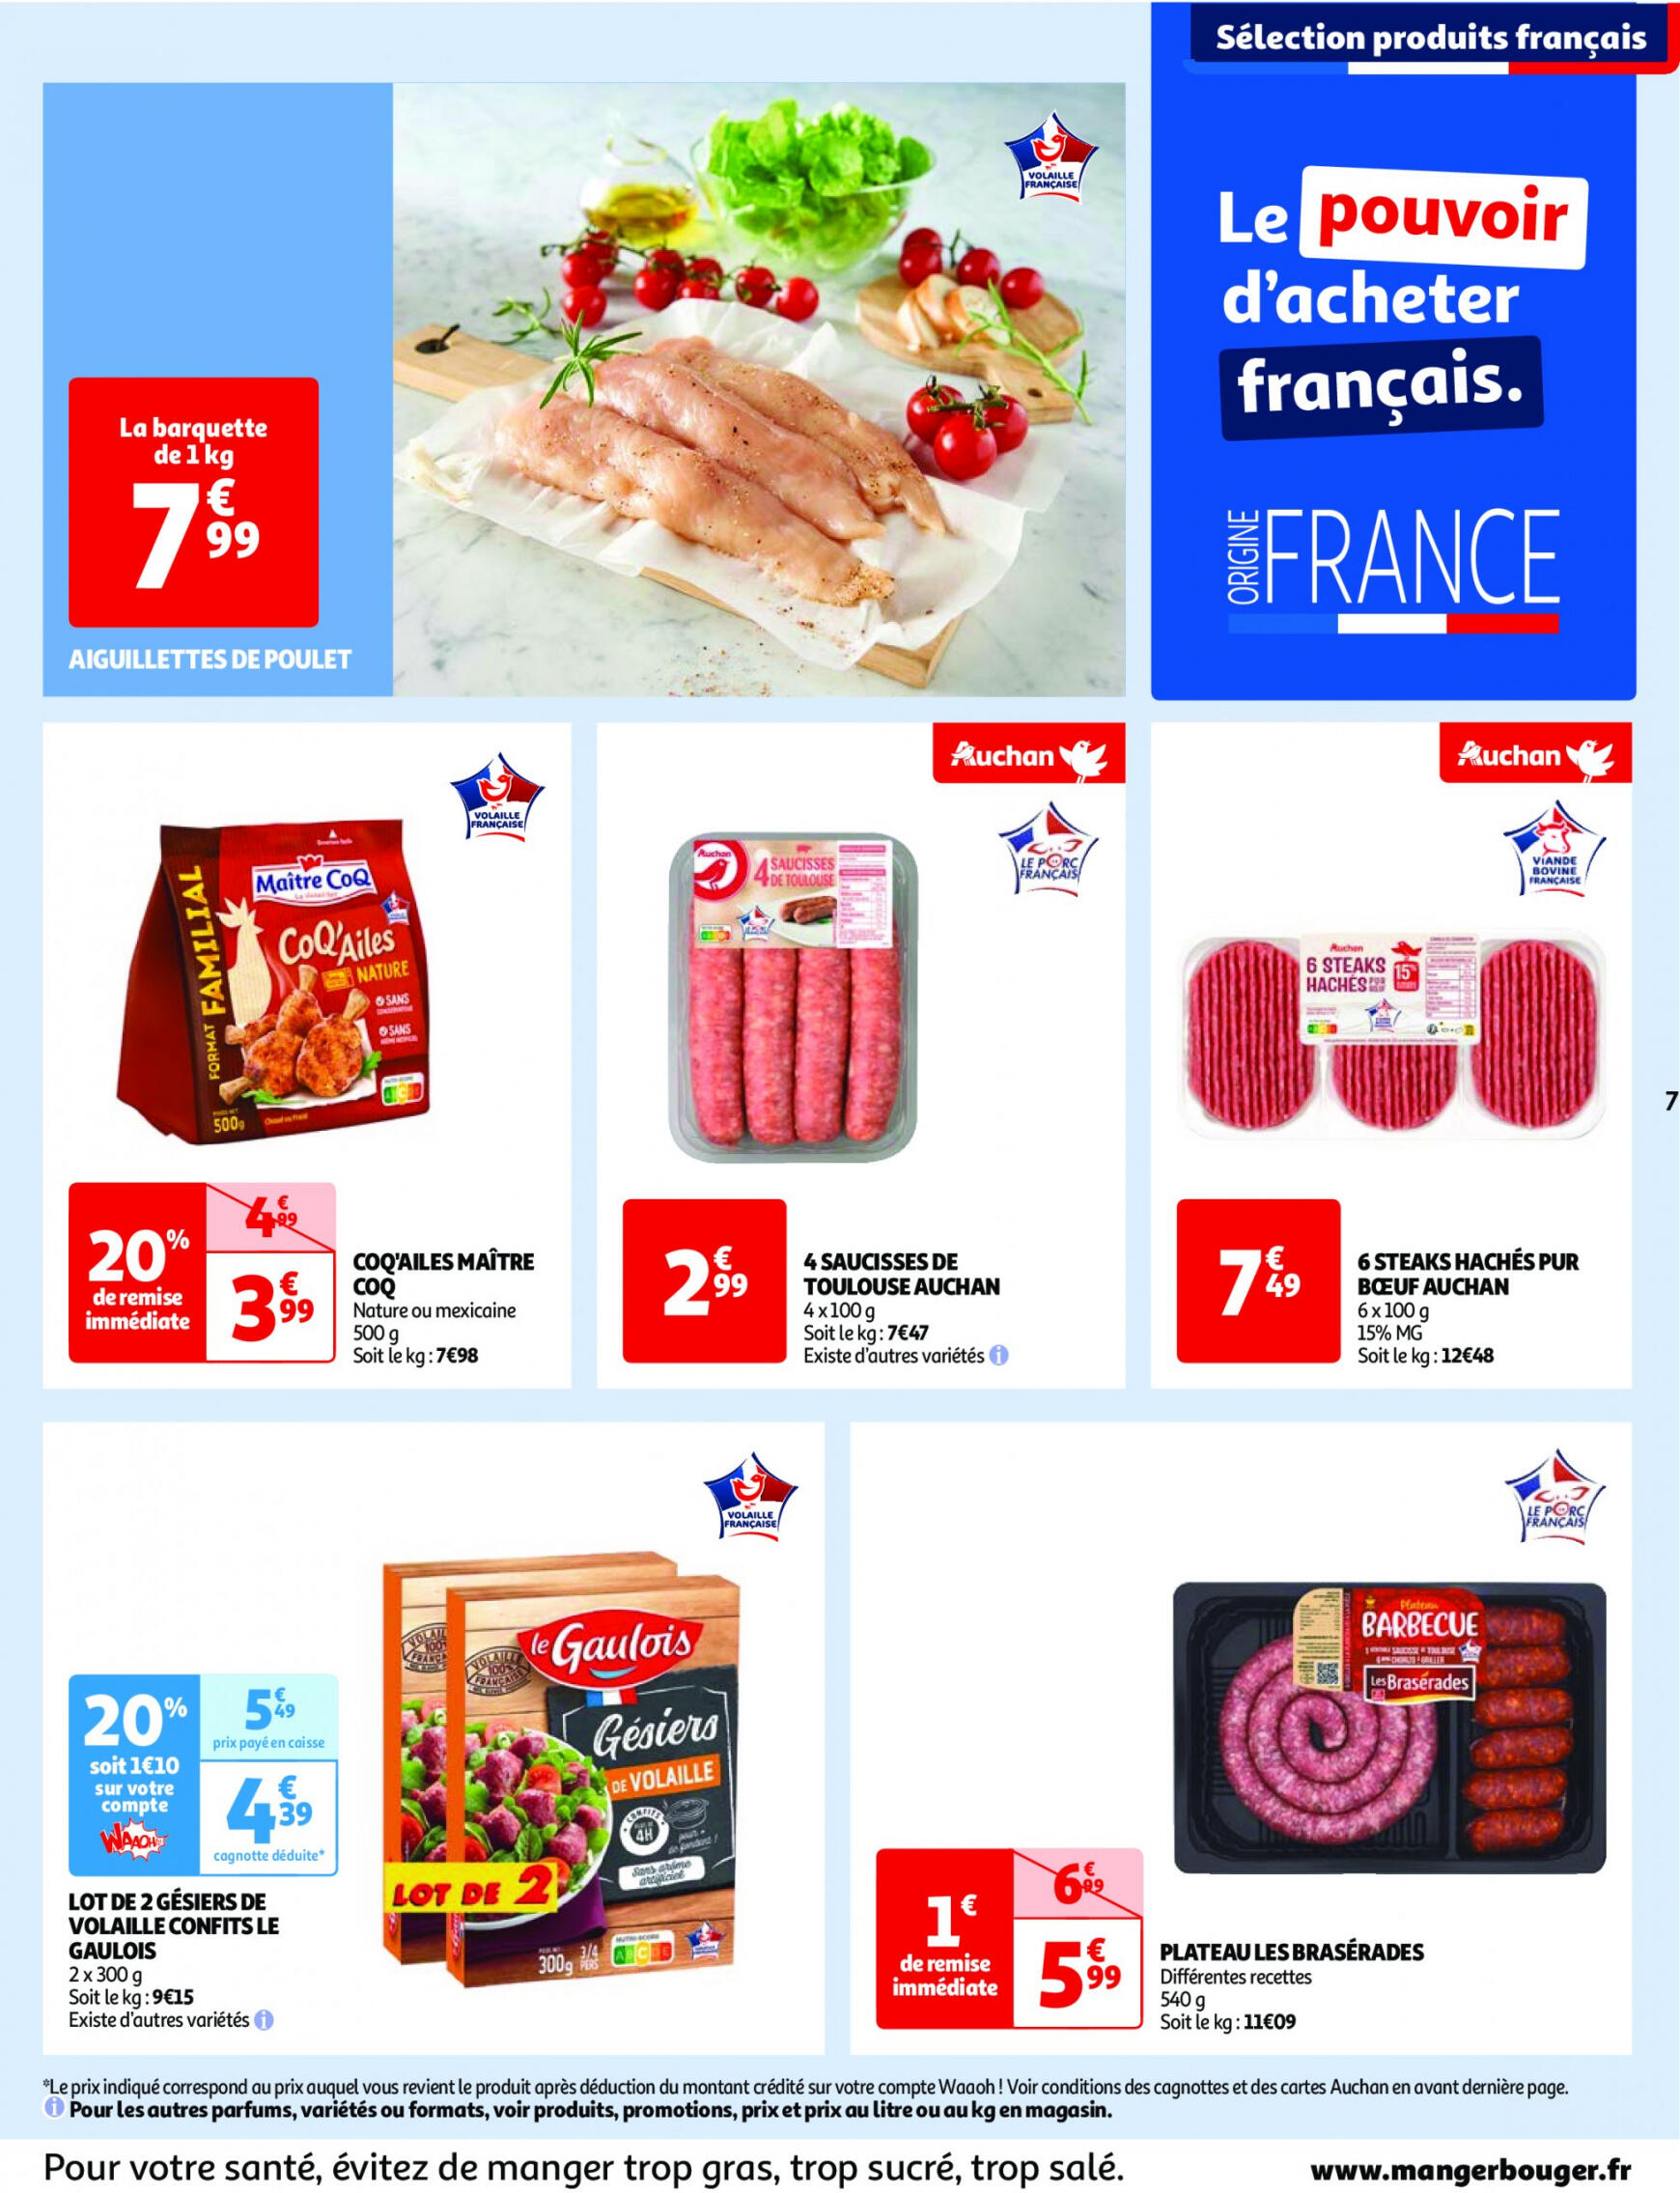 auchan - Prospectus Auchan actuel 14.05. - 21.05. - page: 7